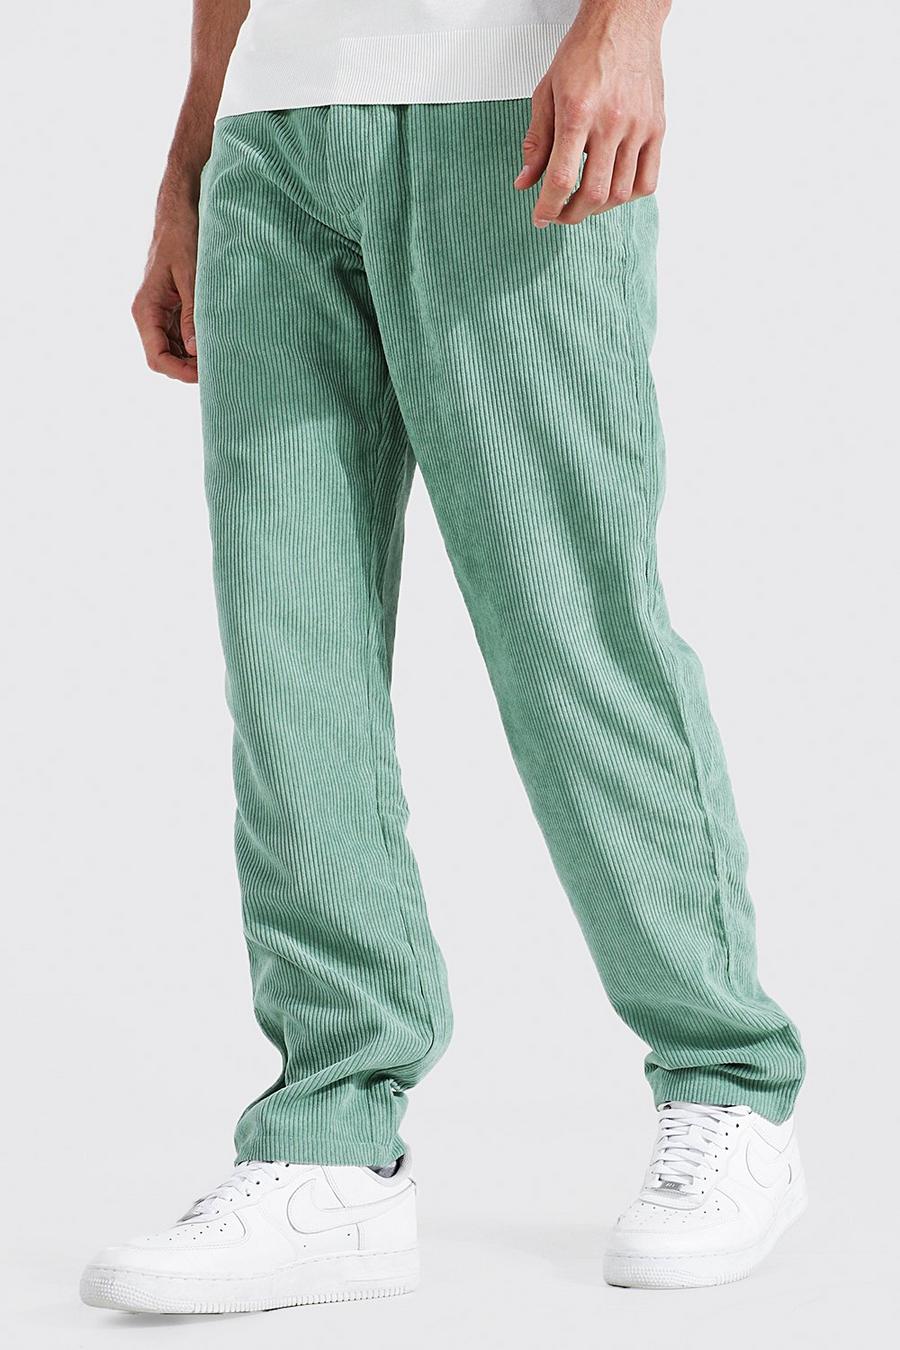 Pantalon cargo droit effet velours côtelé, Sage vert